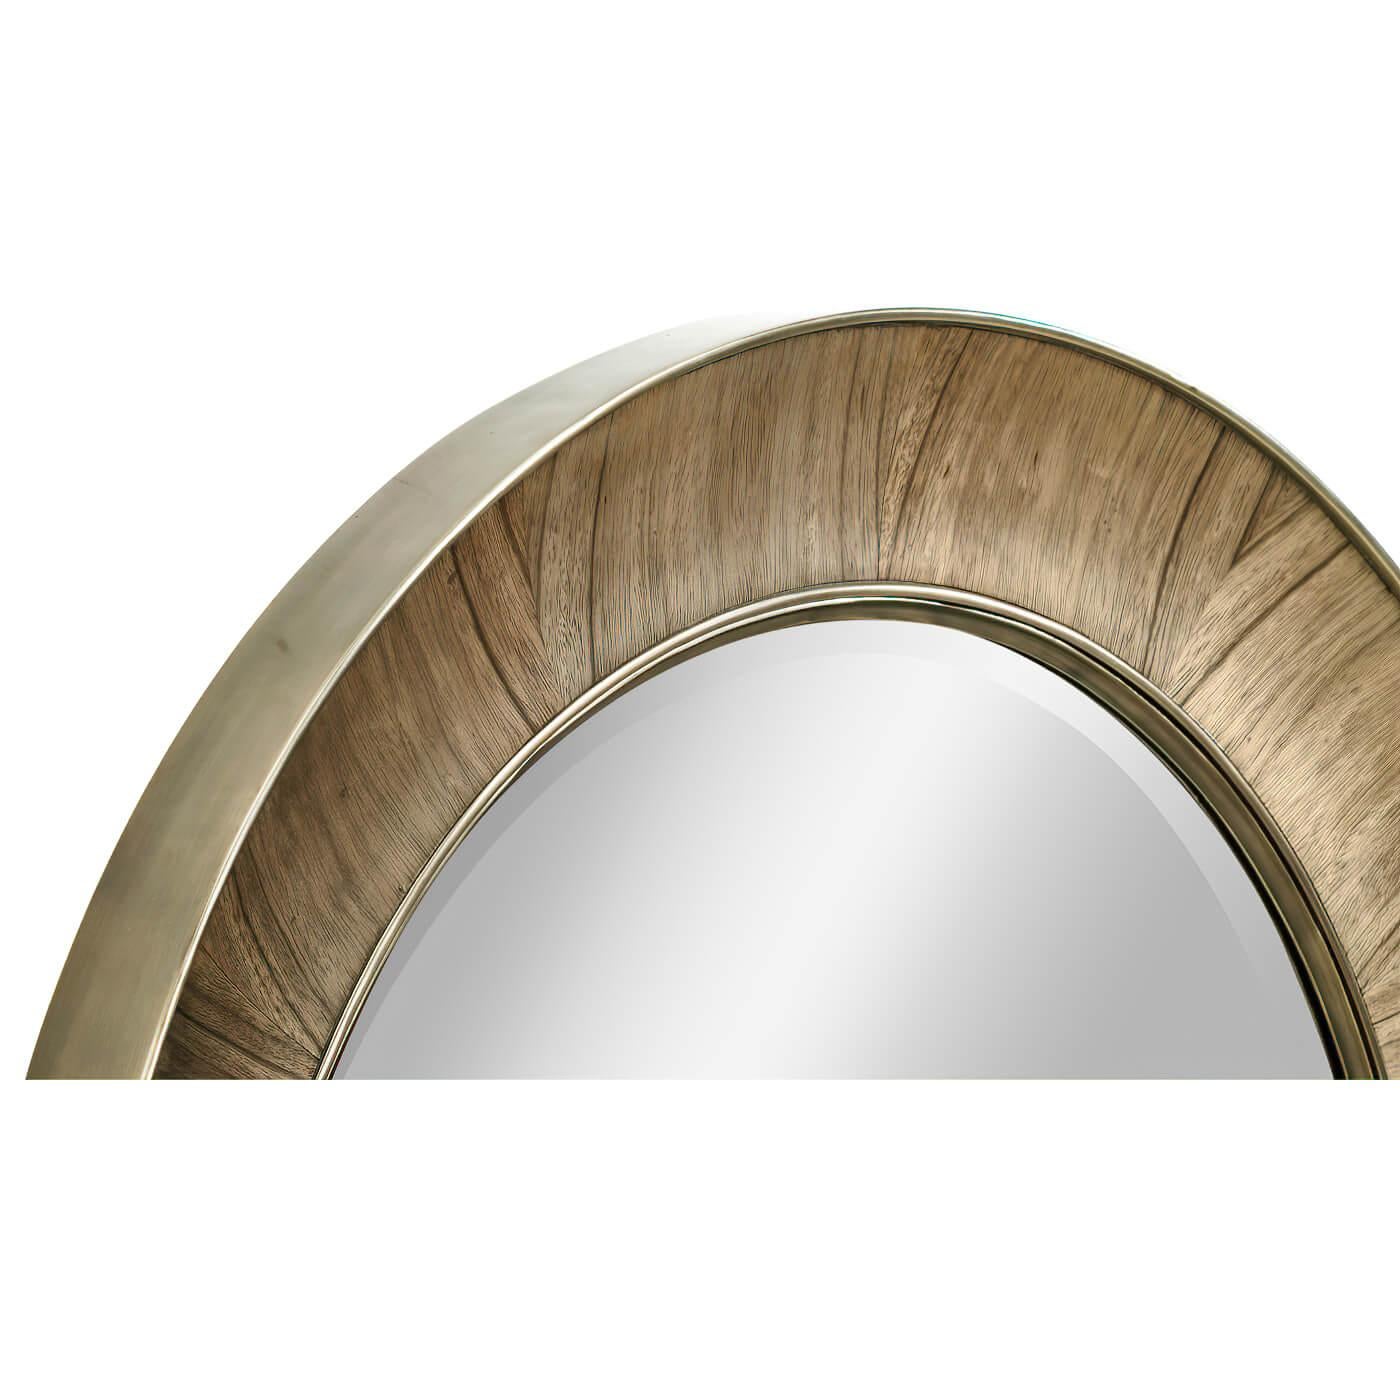 Ce miroir rond de forme concave en placage d'ambre doré a une garniture en laiton et une plaque de miroir biseautée.

Dimensions : 38